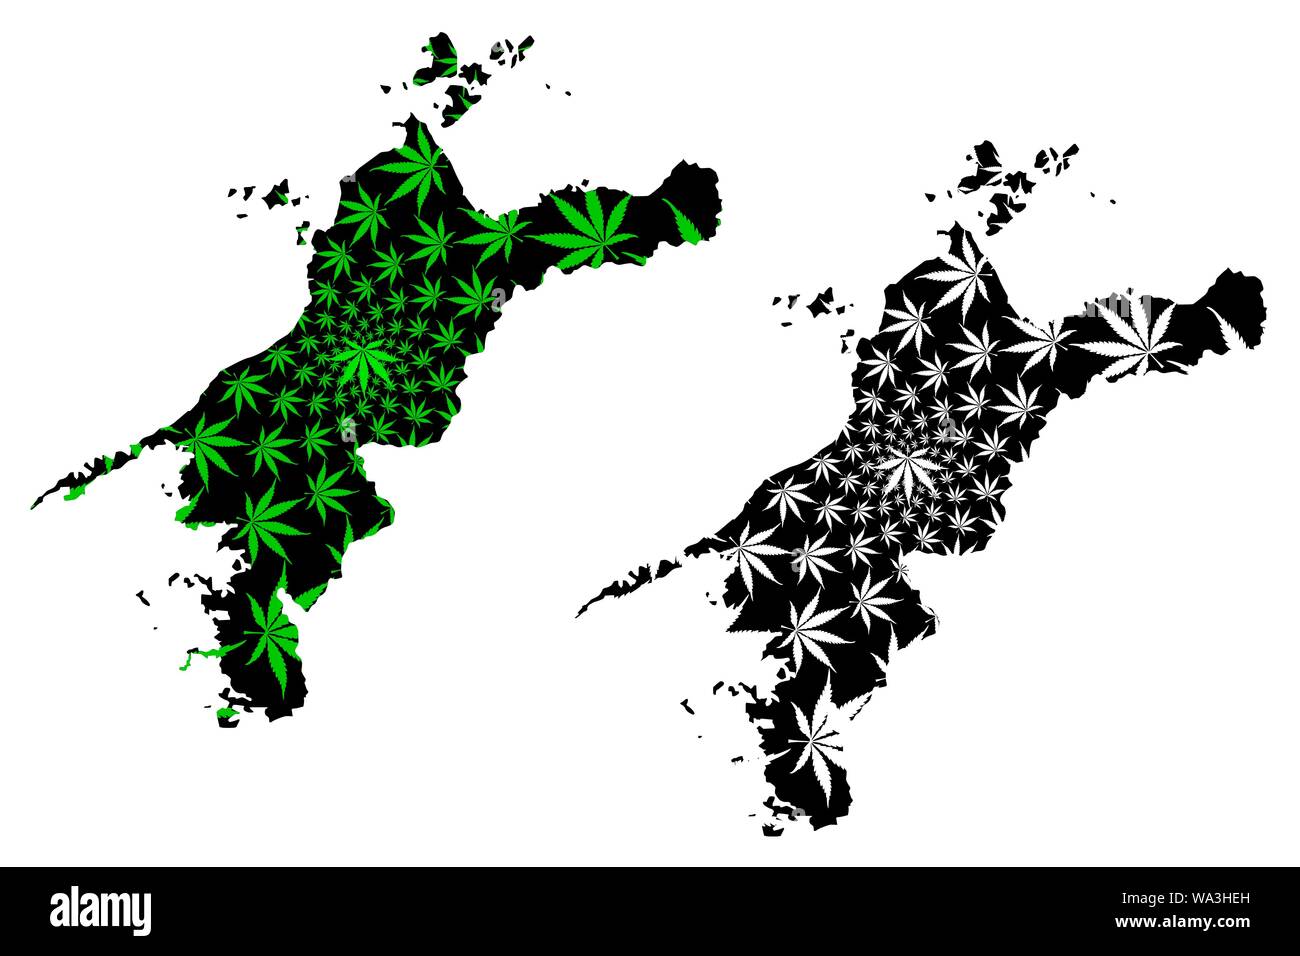 Préfecture d'Ehime (divisions administratives du Japon, préfectures du Japon) La carte est conçue de feuilles de cannabis vert et noir, de la marijuana fait carte d'Ehime Illustration de Vecteur